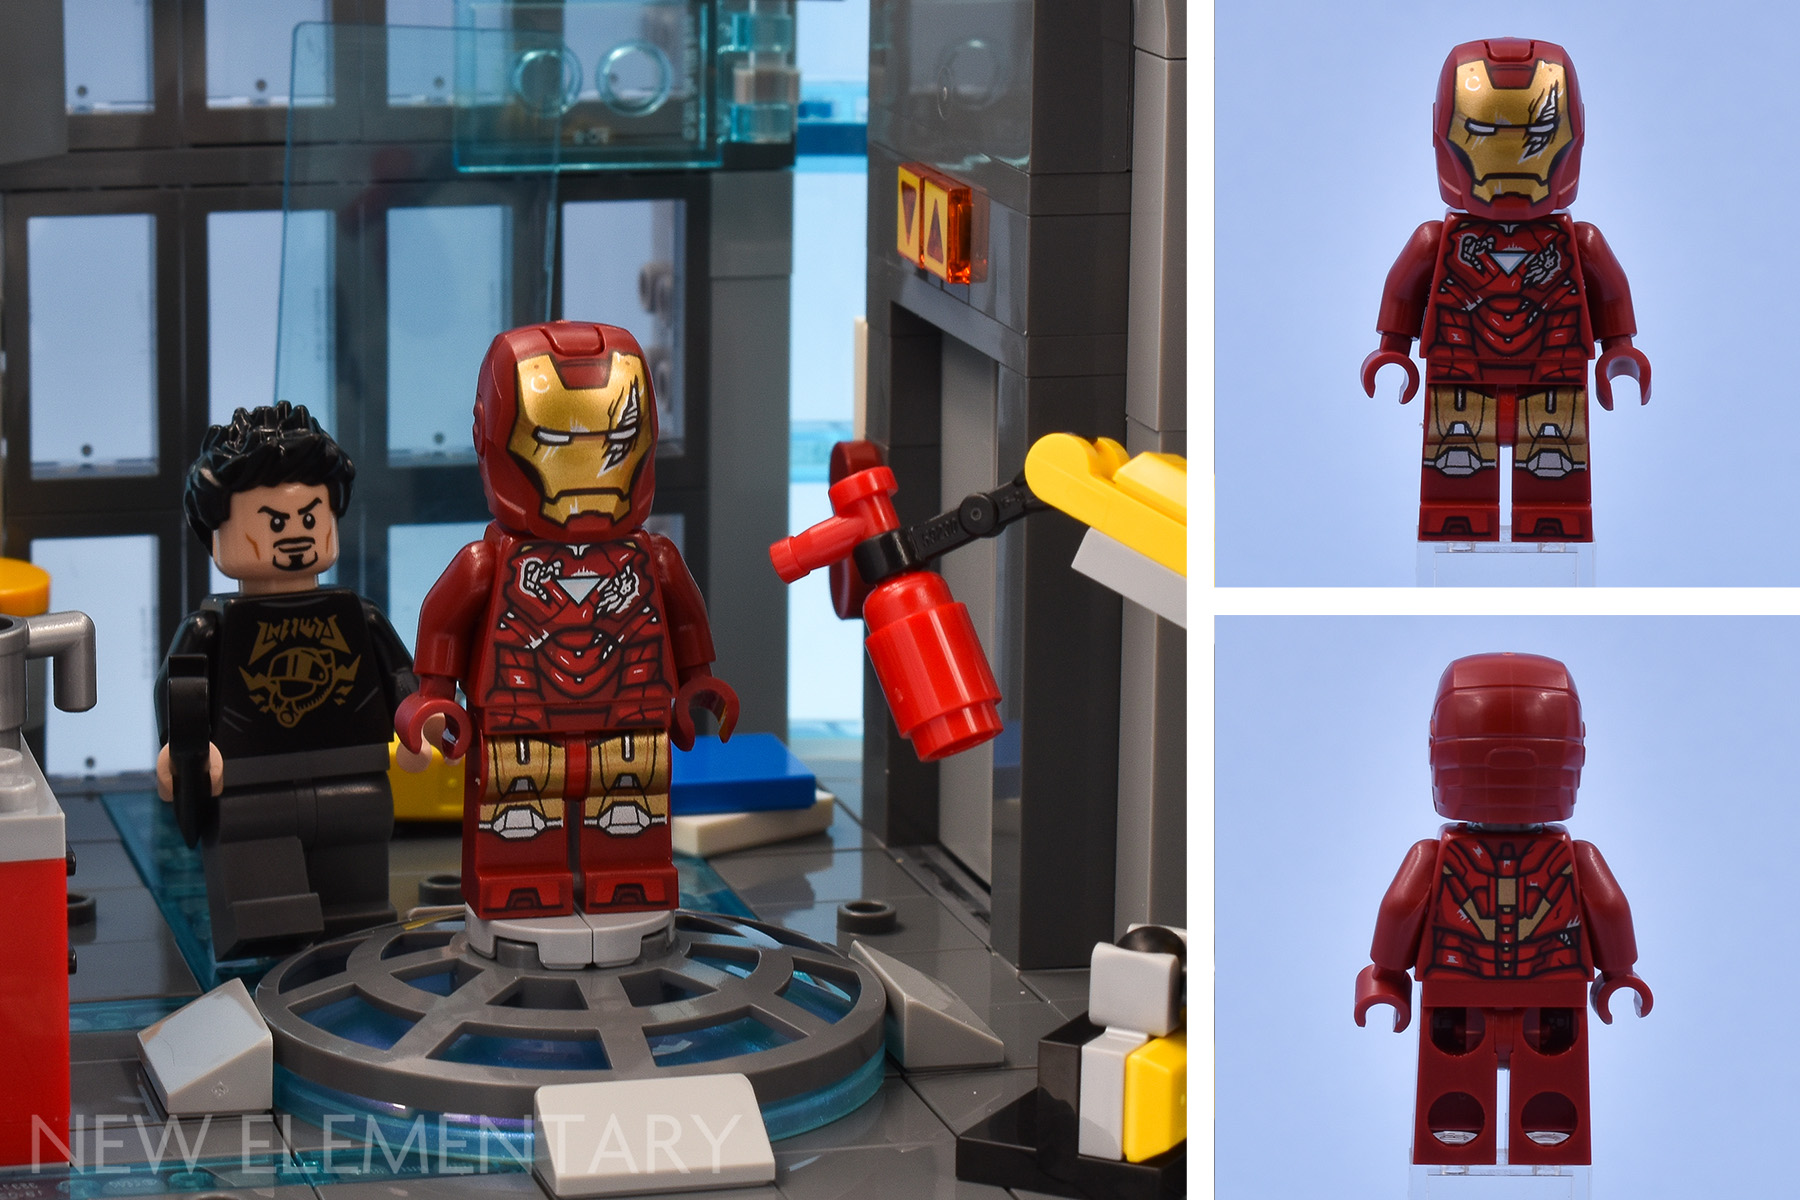 LEGO Marvel 76269 Avengers Tower examen